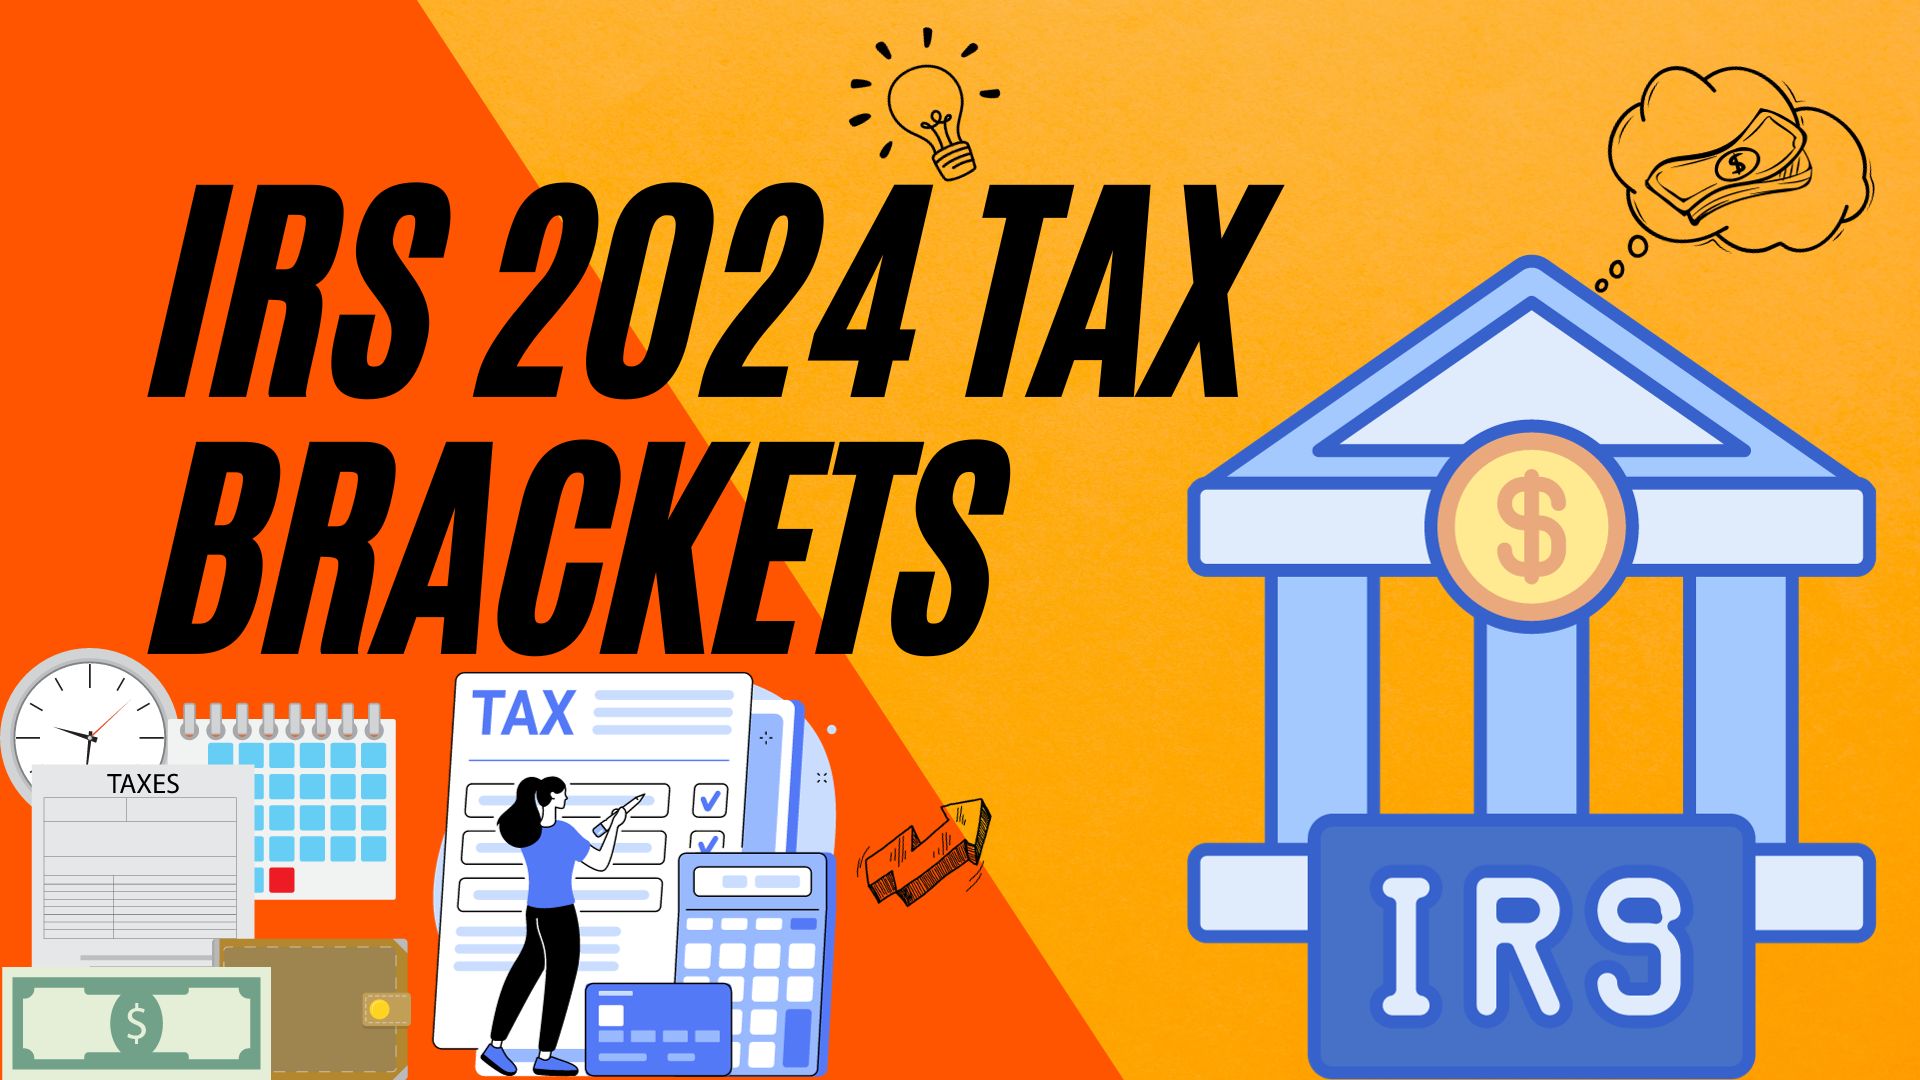 IRS 2024 Tax Brackets